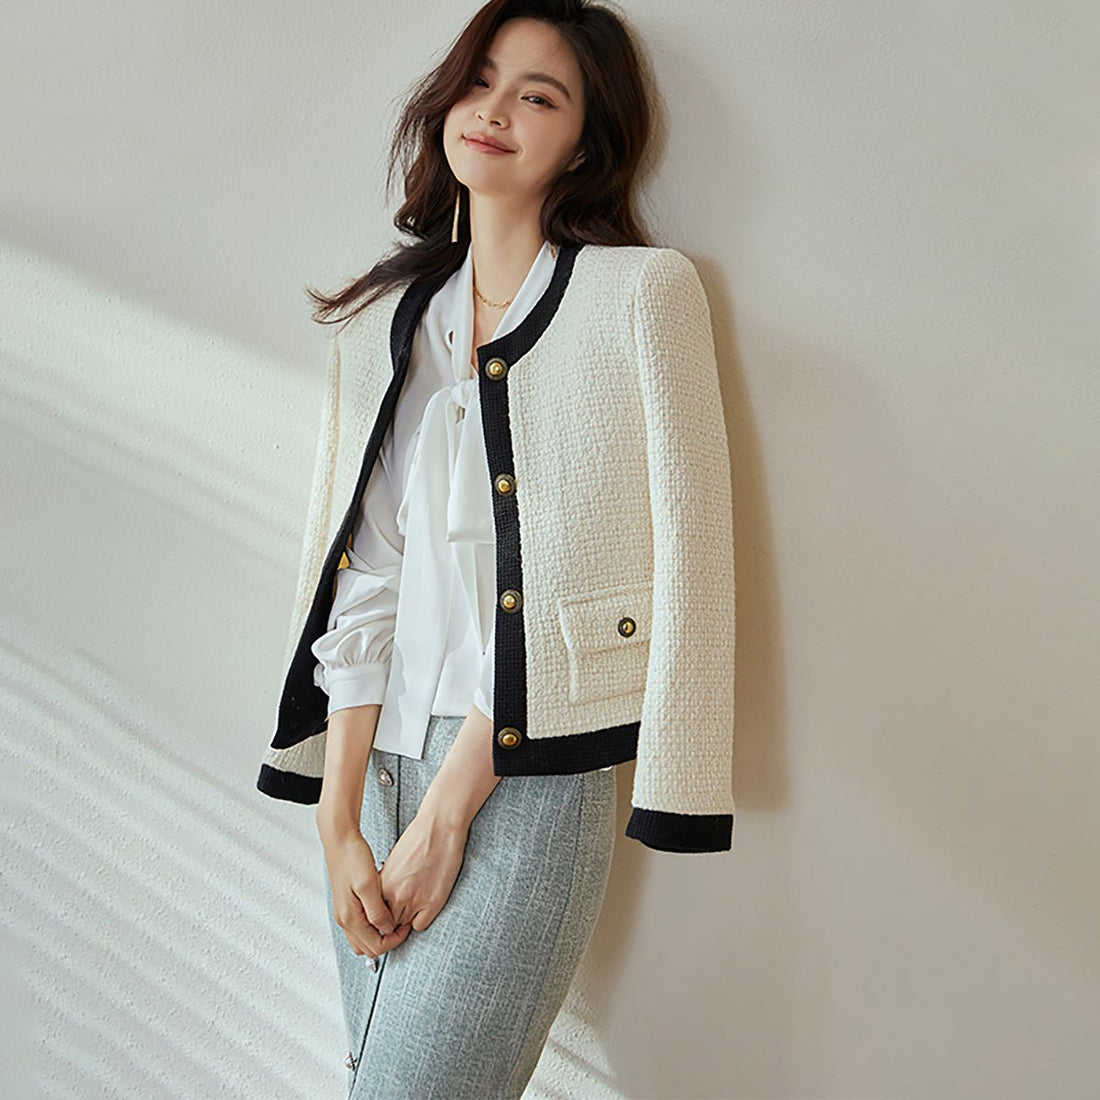 Elegant French Tweed White Jacket - 0cm